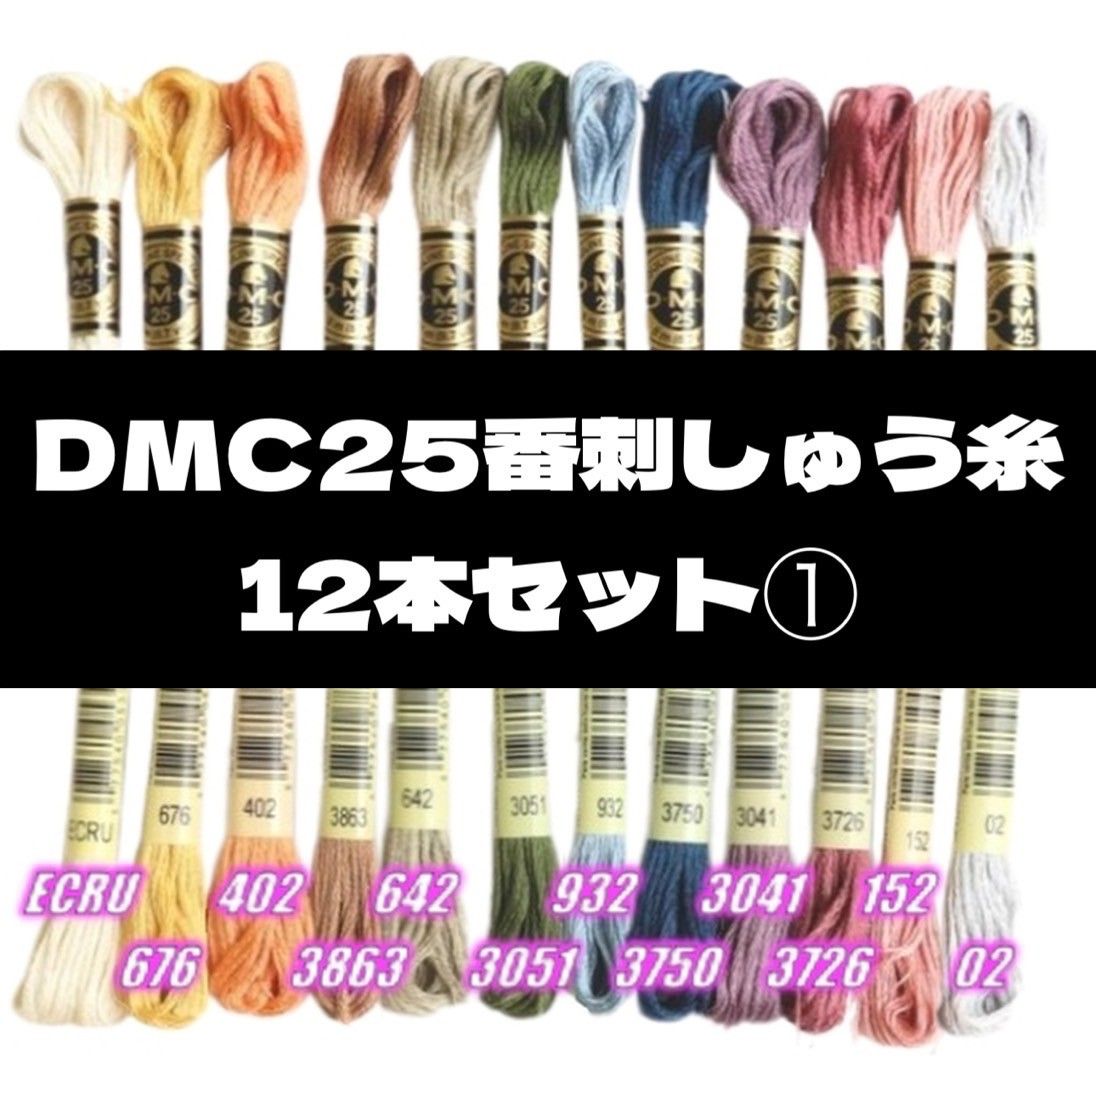 DMC25 刺しゅう糸 #25 12本セット⑦